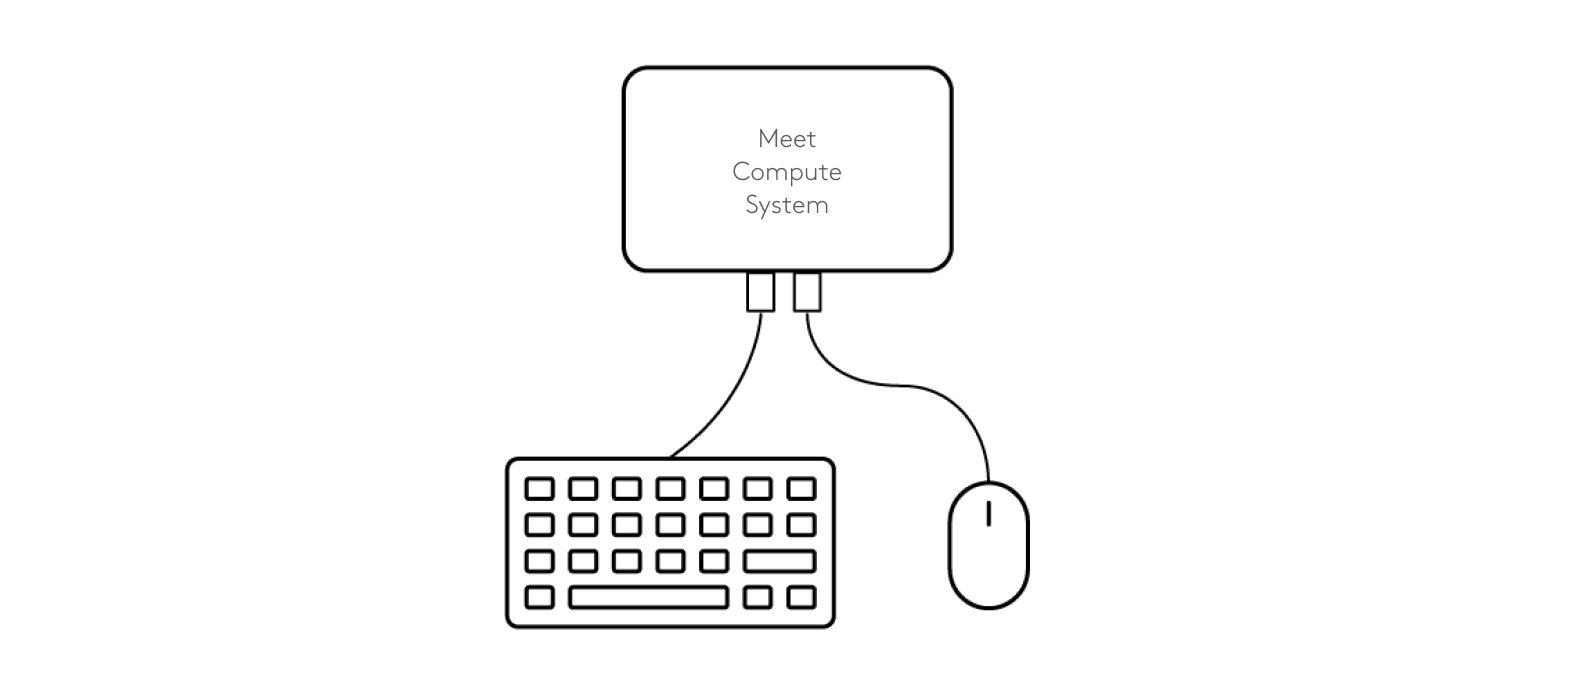 Diagrama de conexiones de teclado y mouse a Meet Compute System